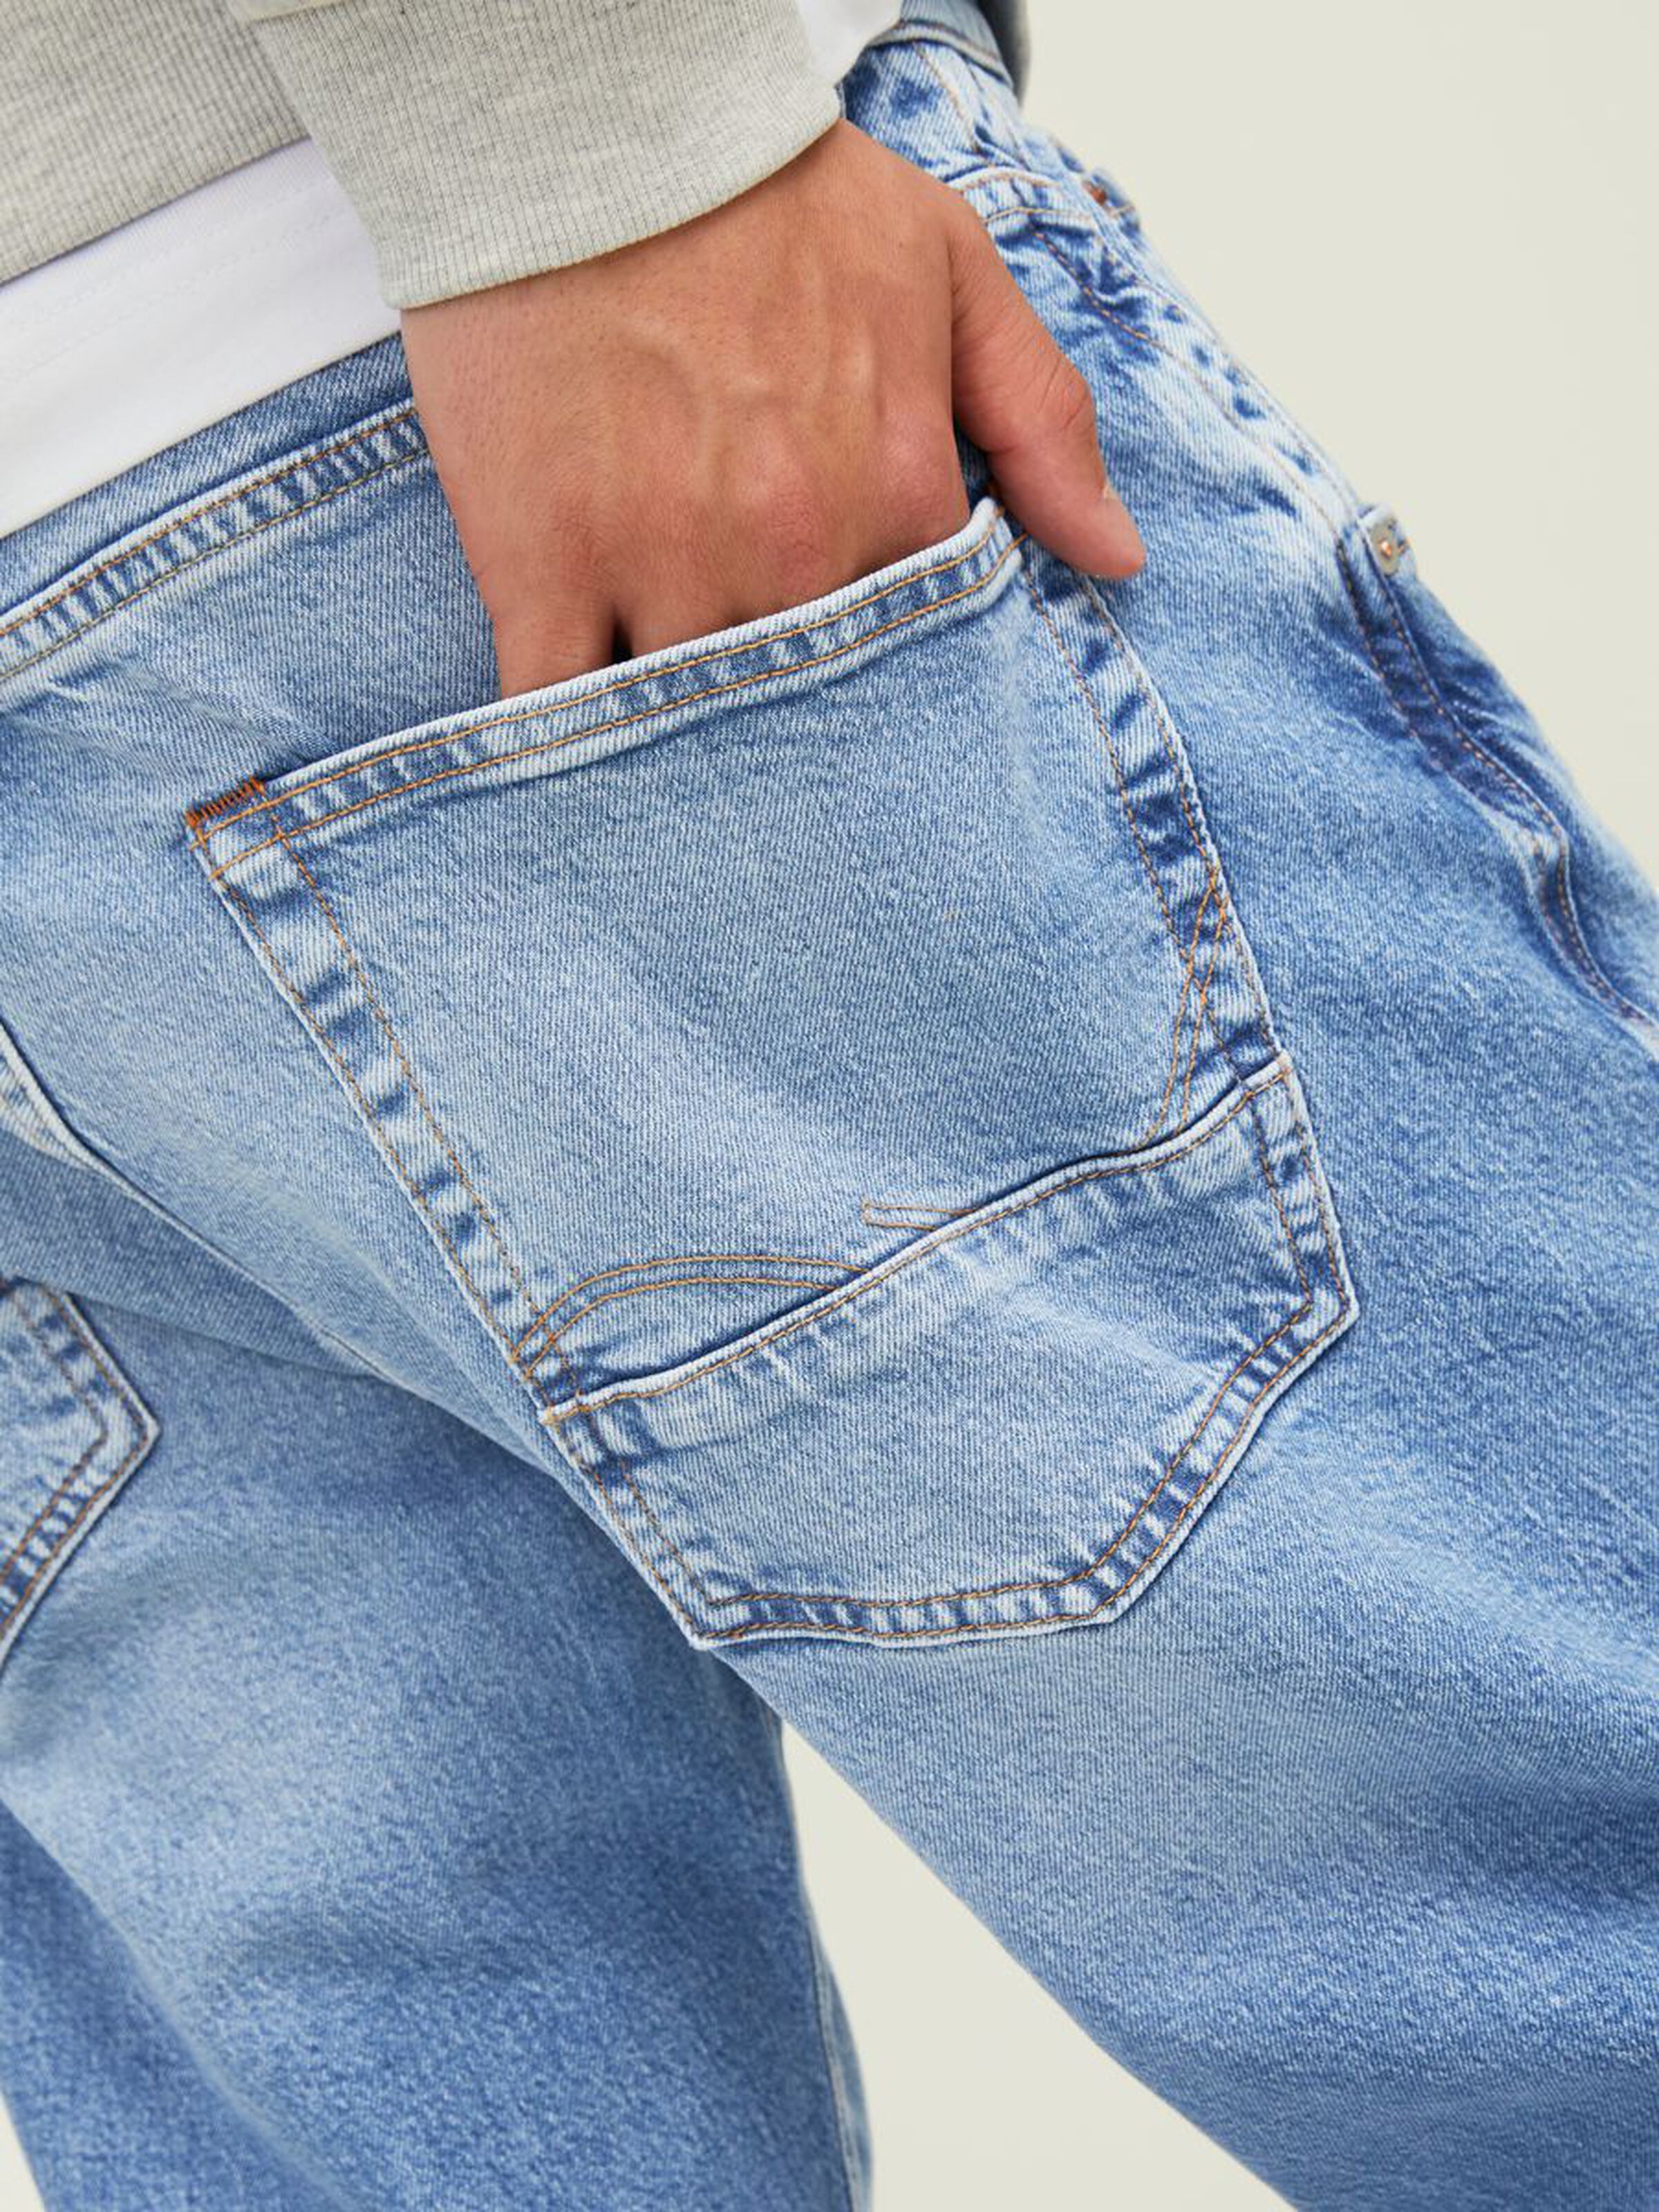 Frank leen cj 715 tapered fit jeans - blue/blue denim